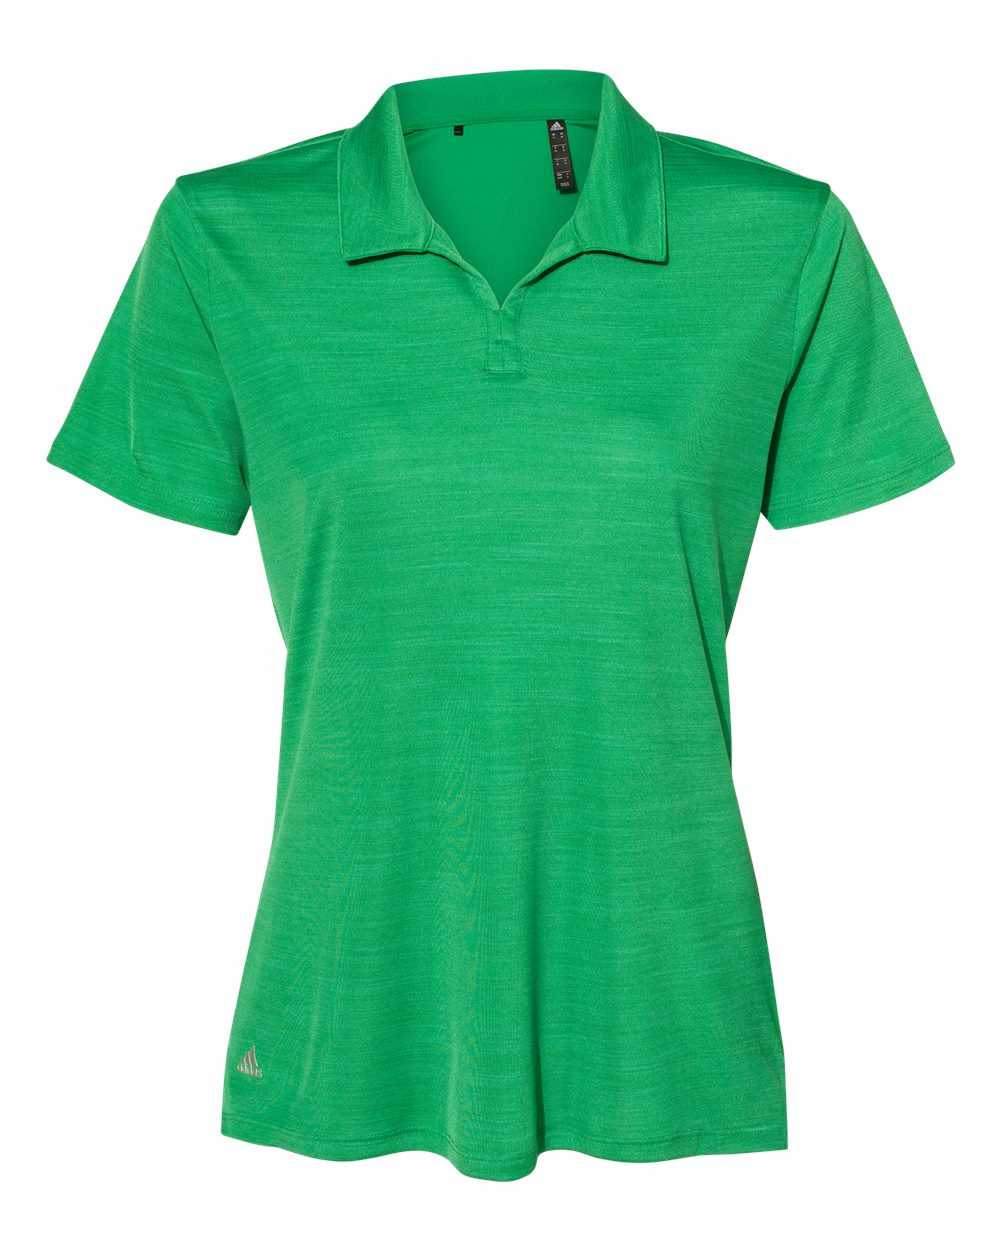 Adidas A403 Women&#39;s M??lange Sport Shirt - Team Green Melange - HIT a Double